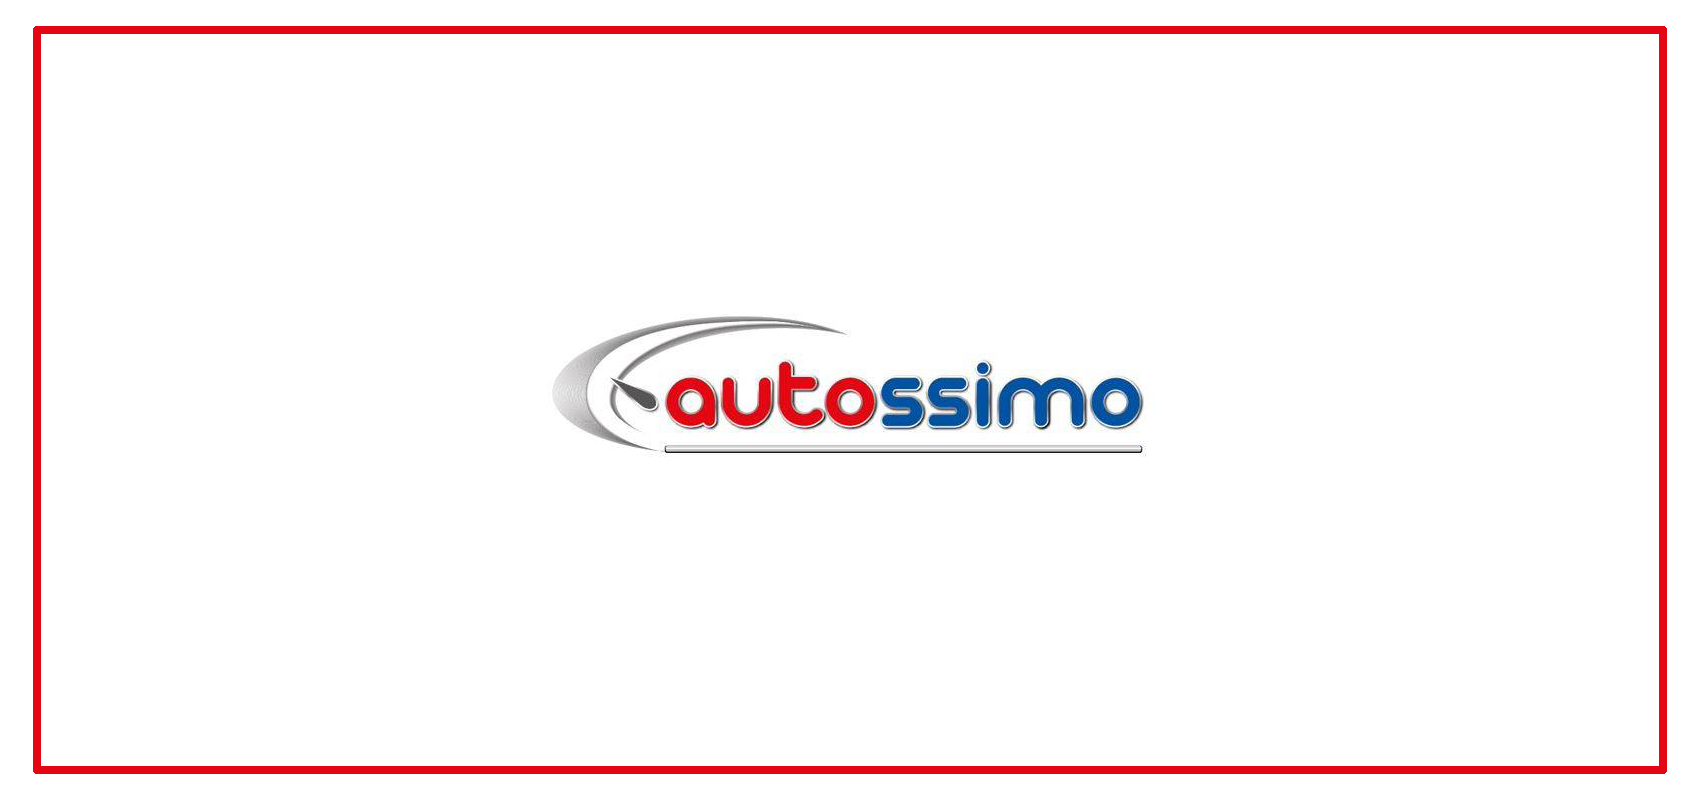 FAQ: Kumaha ngahubungan Autossimo Public/Pro?